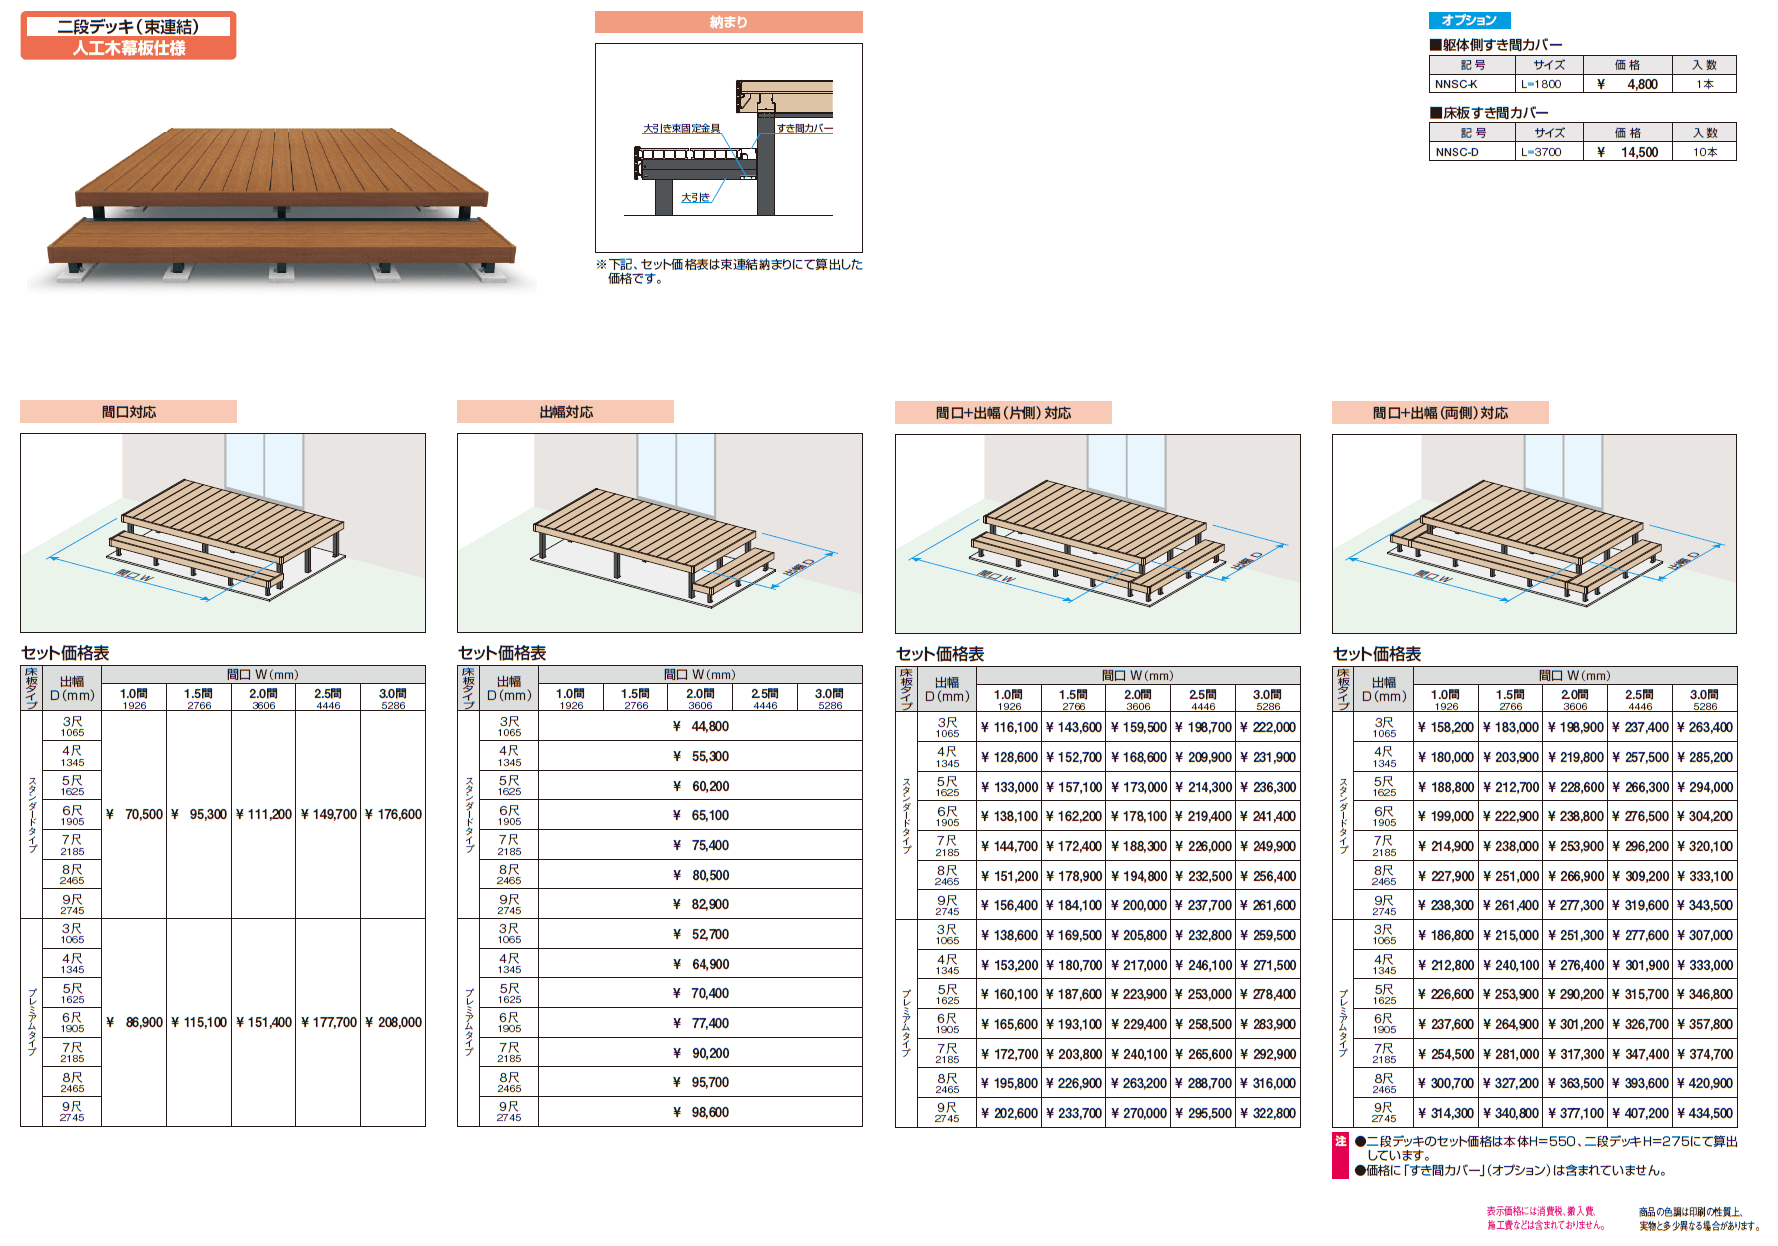 ヴィラウッド 二段デッキ 人工木幕板仕様_価格_1